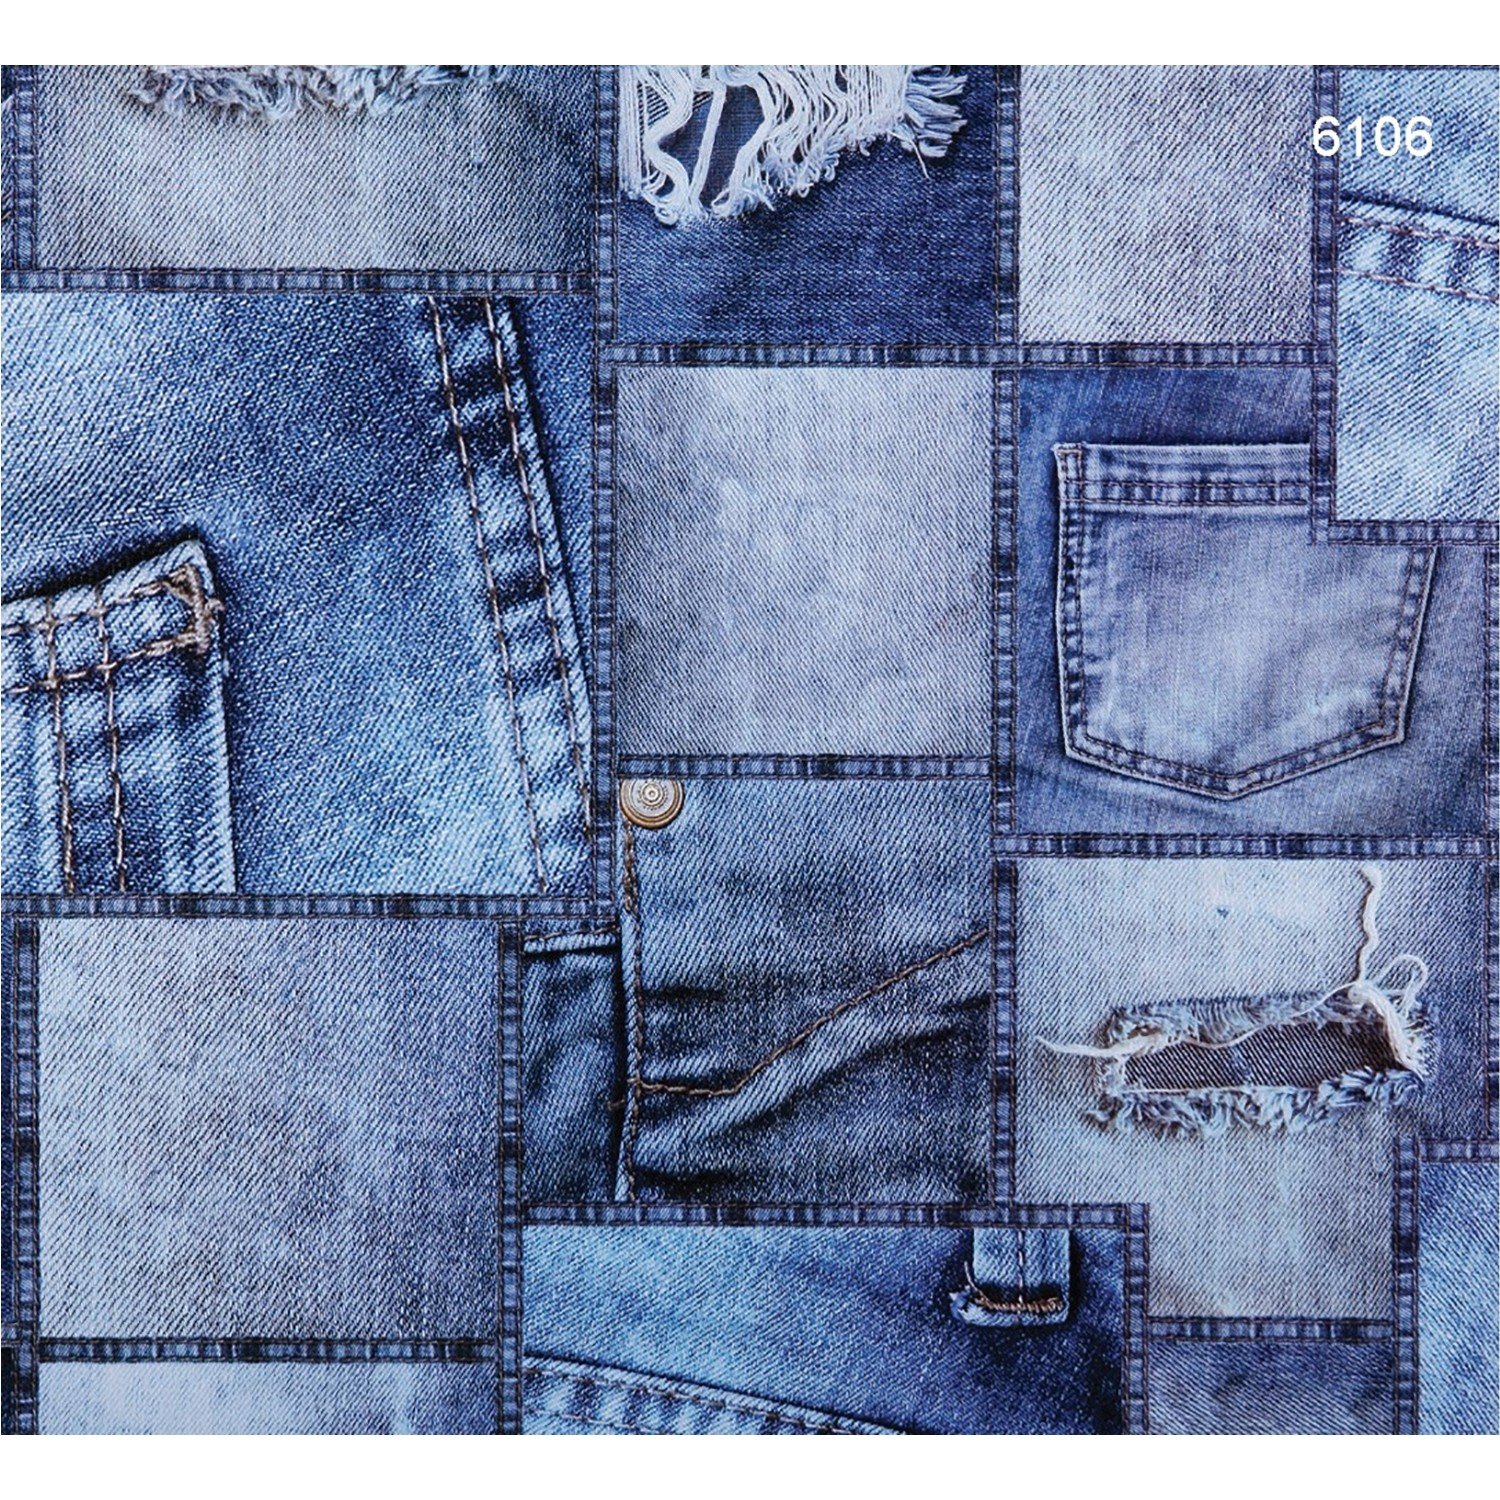 Текстура джинсов. Джинсовая ткань. Фактура джинсовой ткани. Материал джинс. Рваная джинсовая ткань.